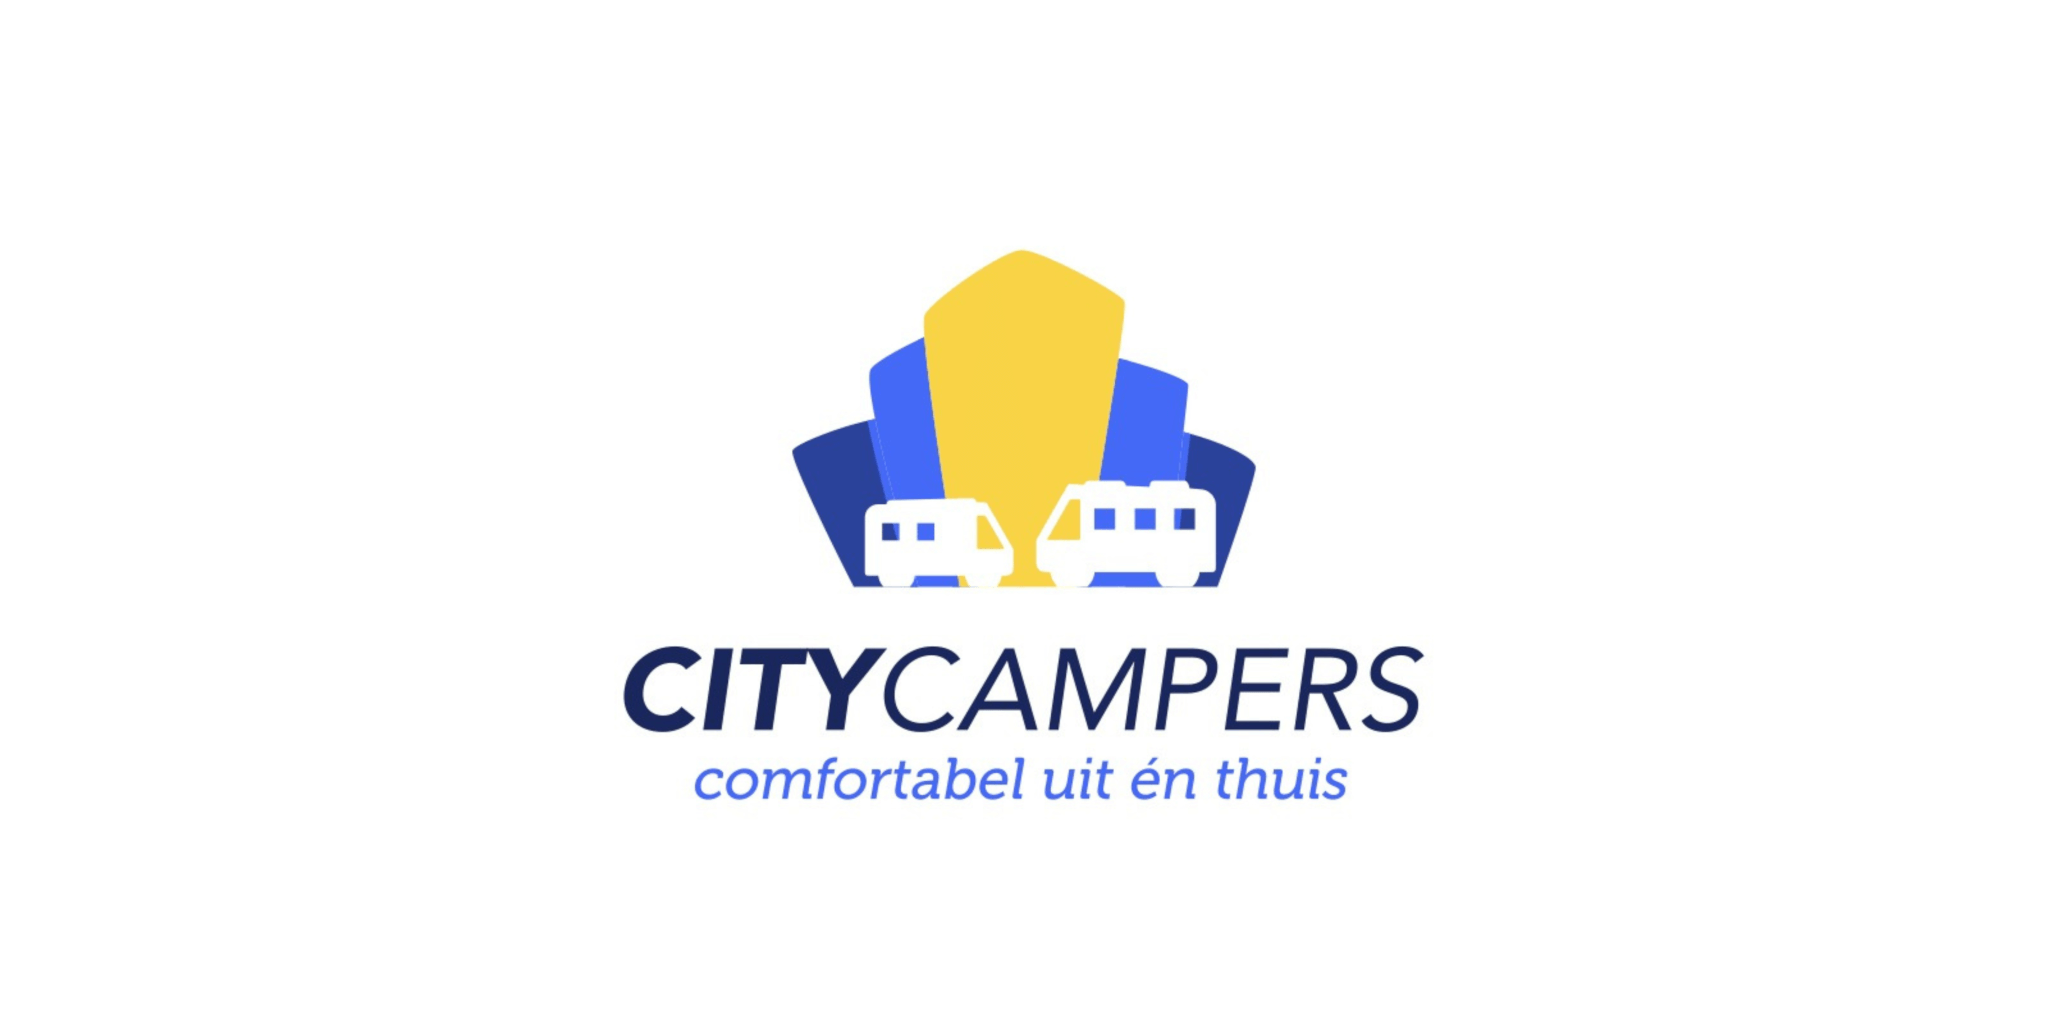 De groeiambities van City Campers